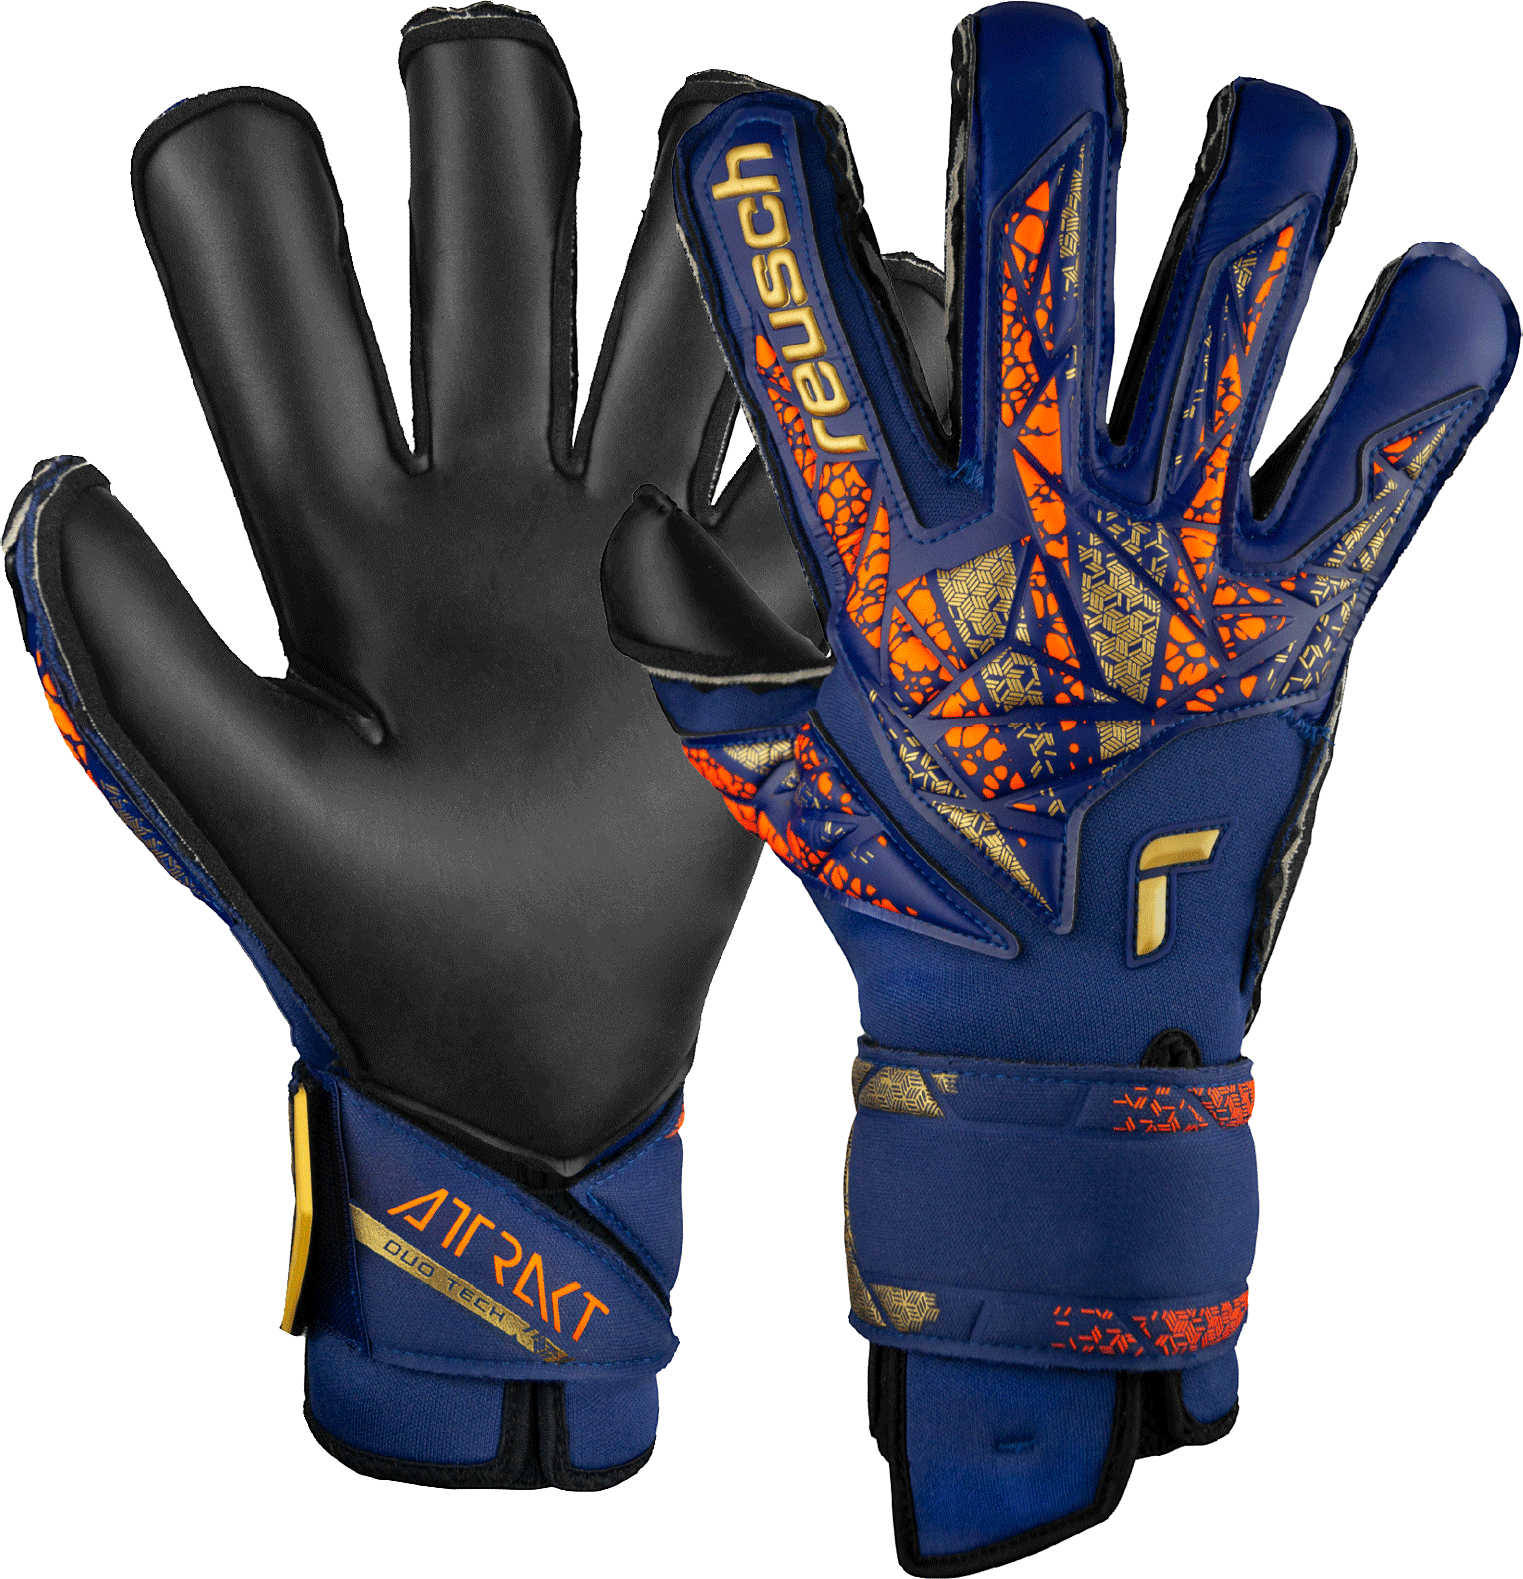 Goalkeeper's Reusch Attrakt Duo Evolution Goalkeeper Gloves